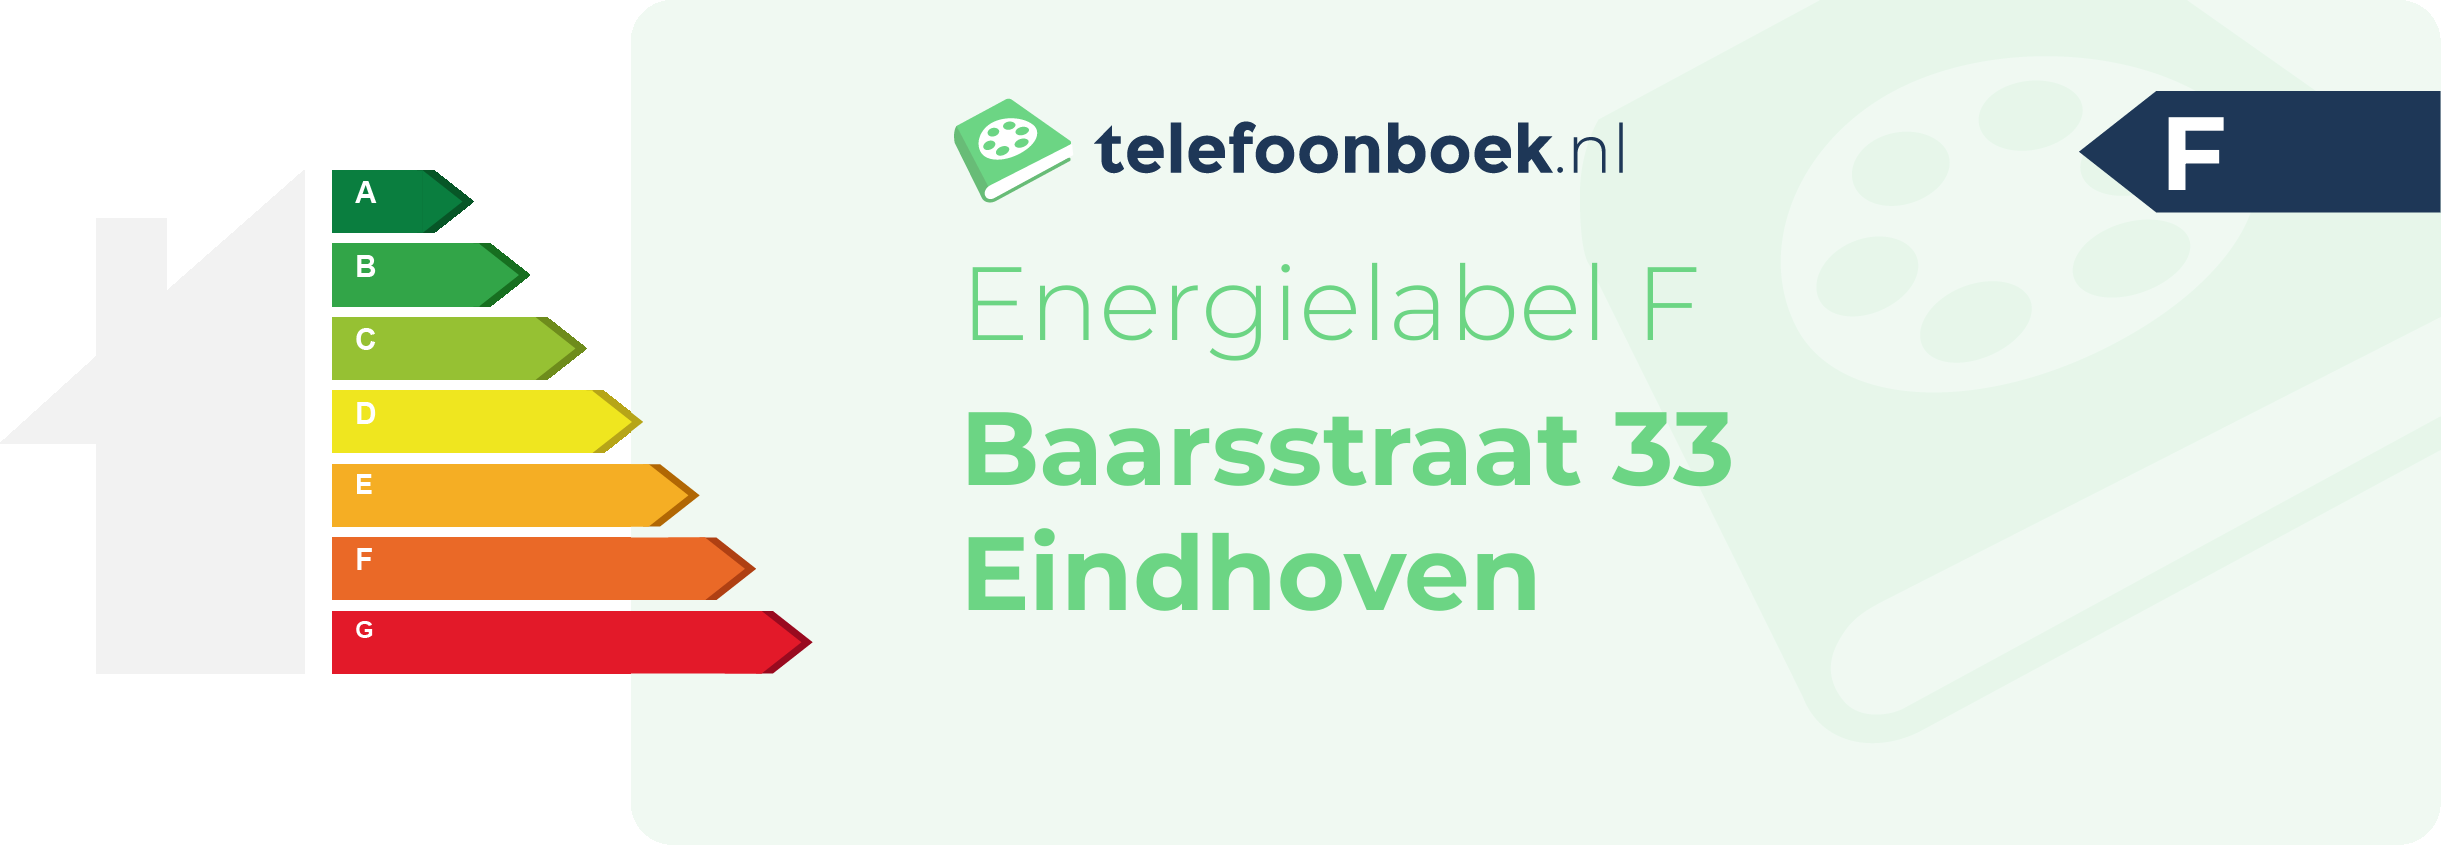 Energielabel Baarsstraat 33 Eindhoven